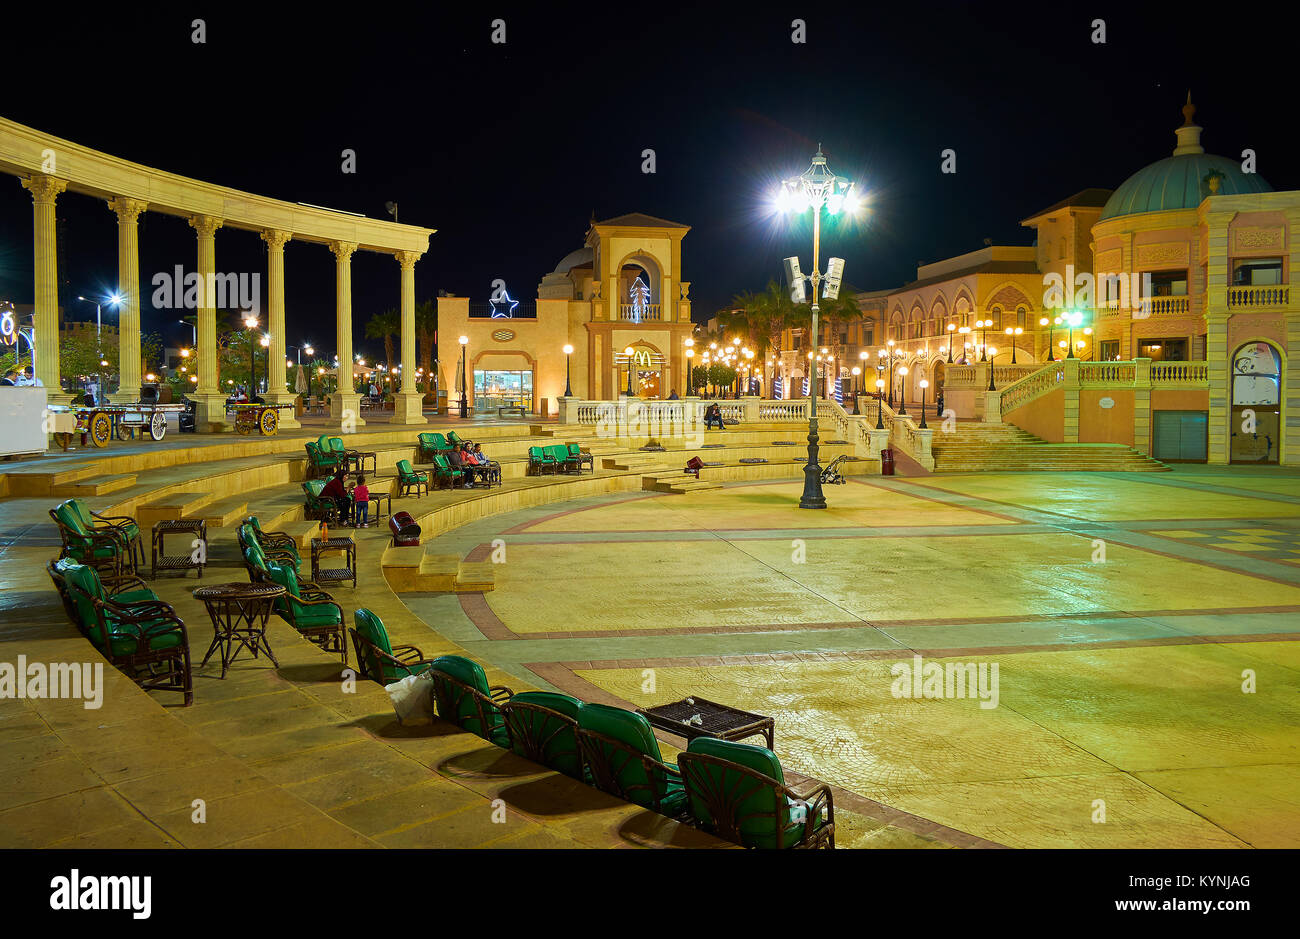 SHARM EL SHEIKH, Ägypten - Dezember 15, 2017: Am Abend Il Mercato Shopping Square wird zum Konzert und Unterhaltung Zone, am 15. Dezember in Sha Stockfoto